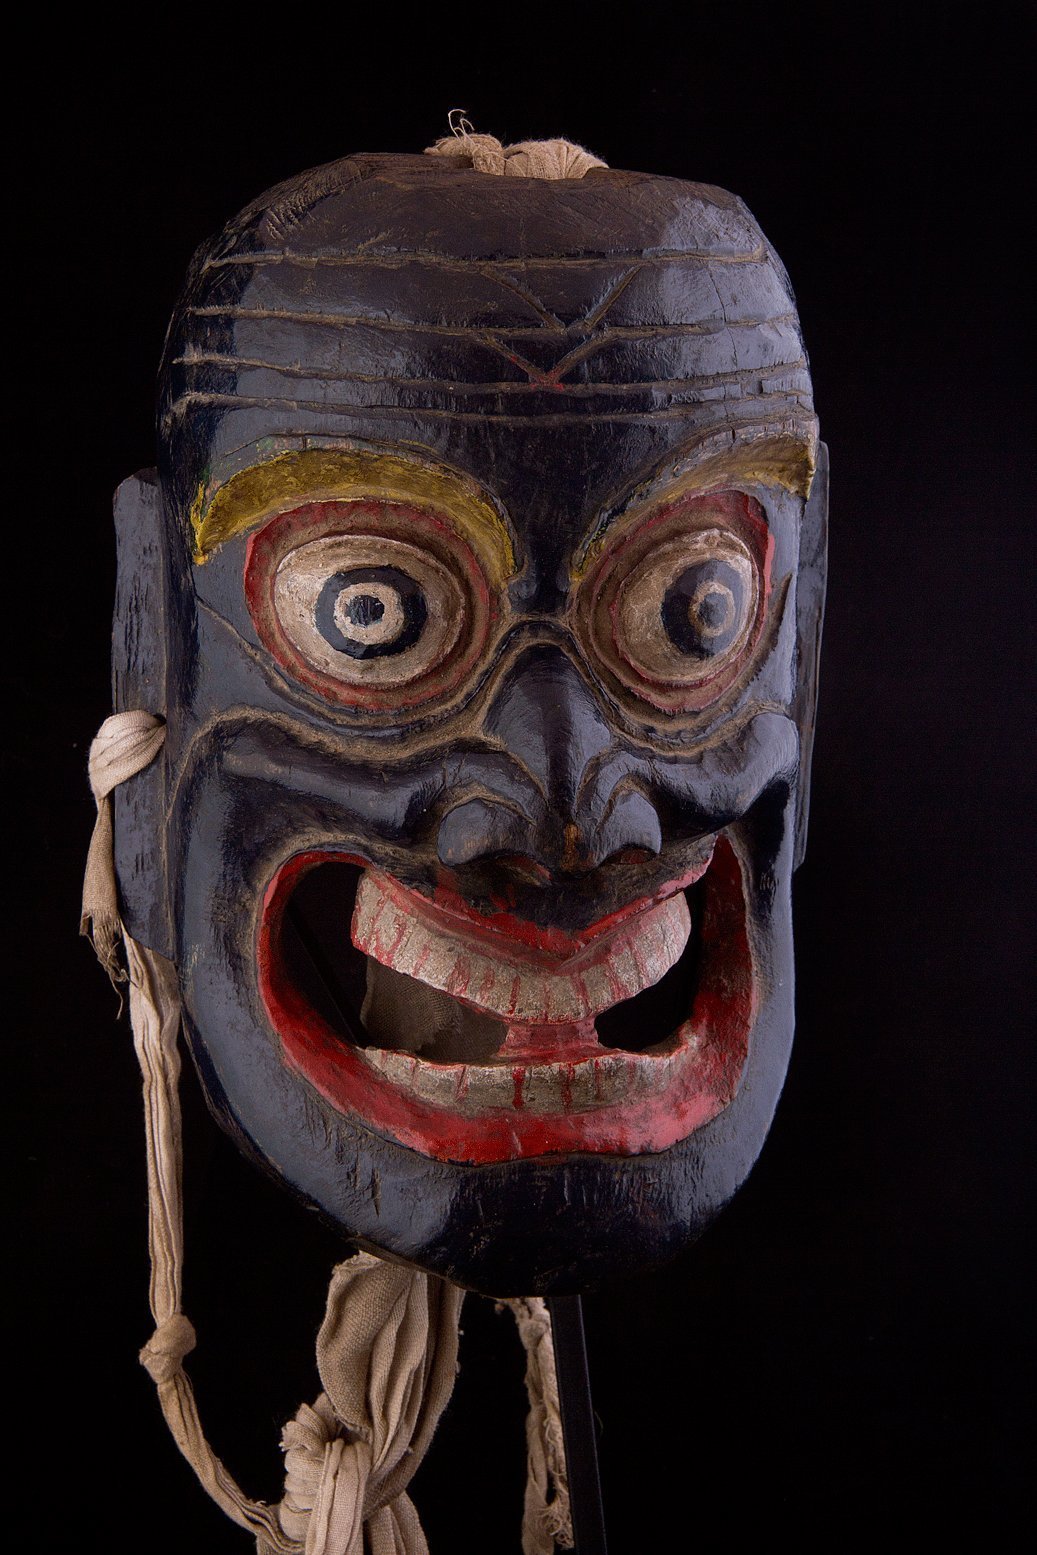 Boudhist mask, Himalaya, Tibet